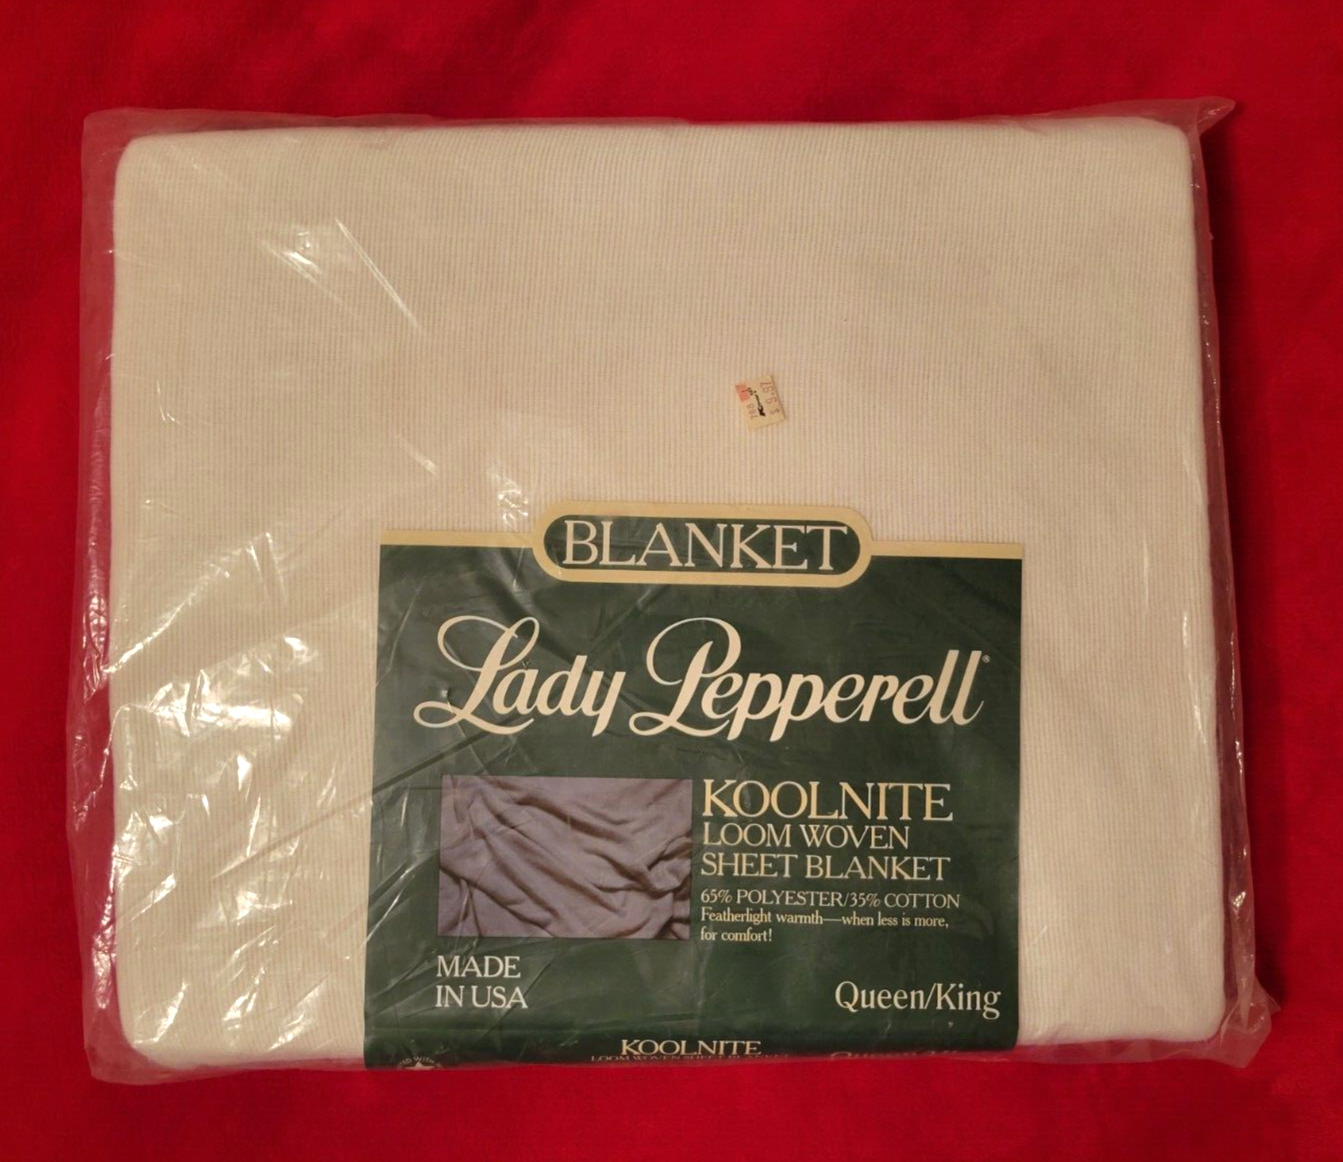 VTG New in Pkg Lady Pepperell Koolnite Sheet Blanket 108 x 90 Made in USA White